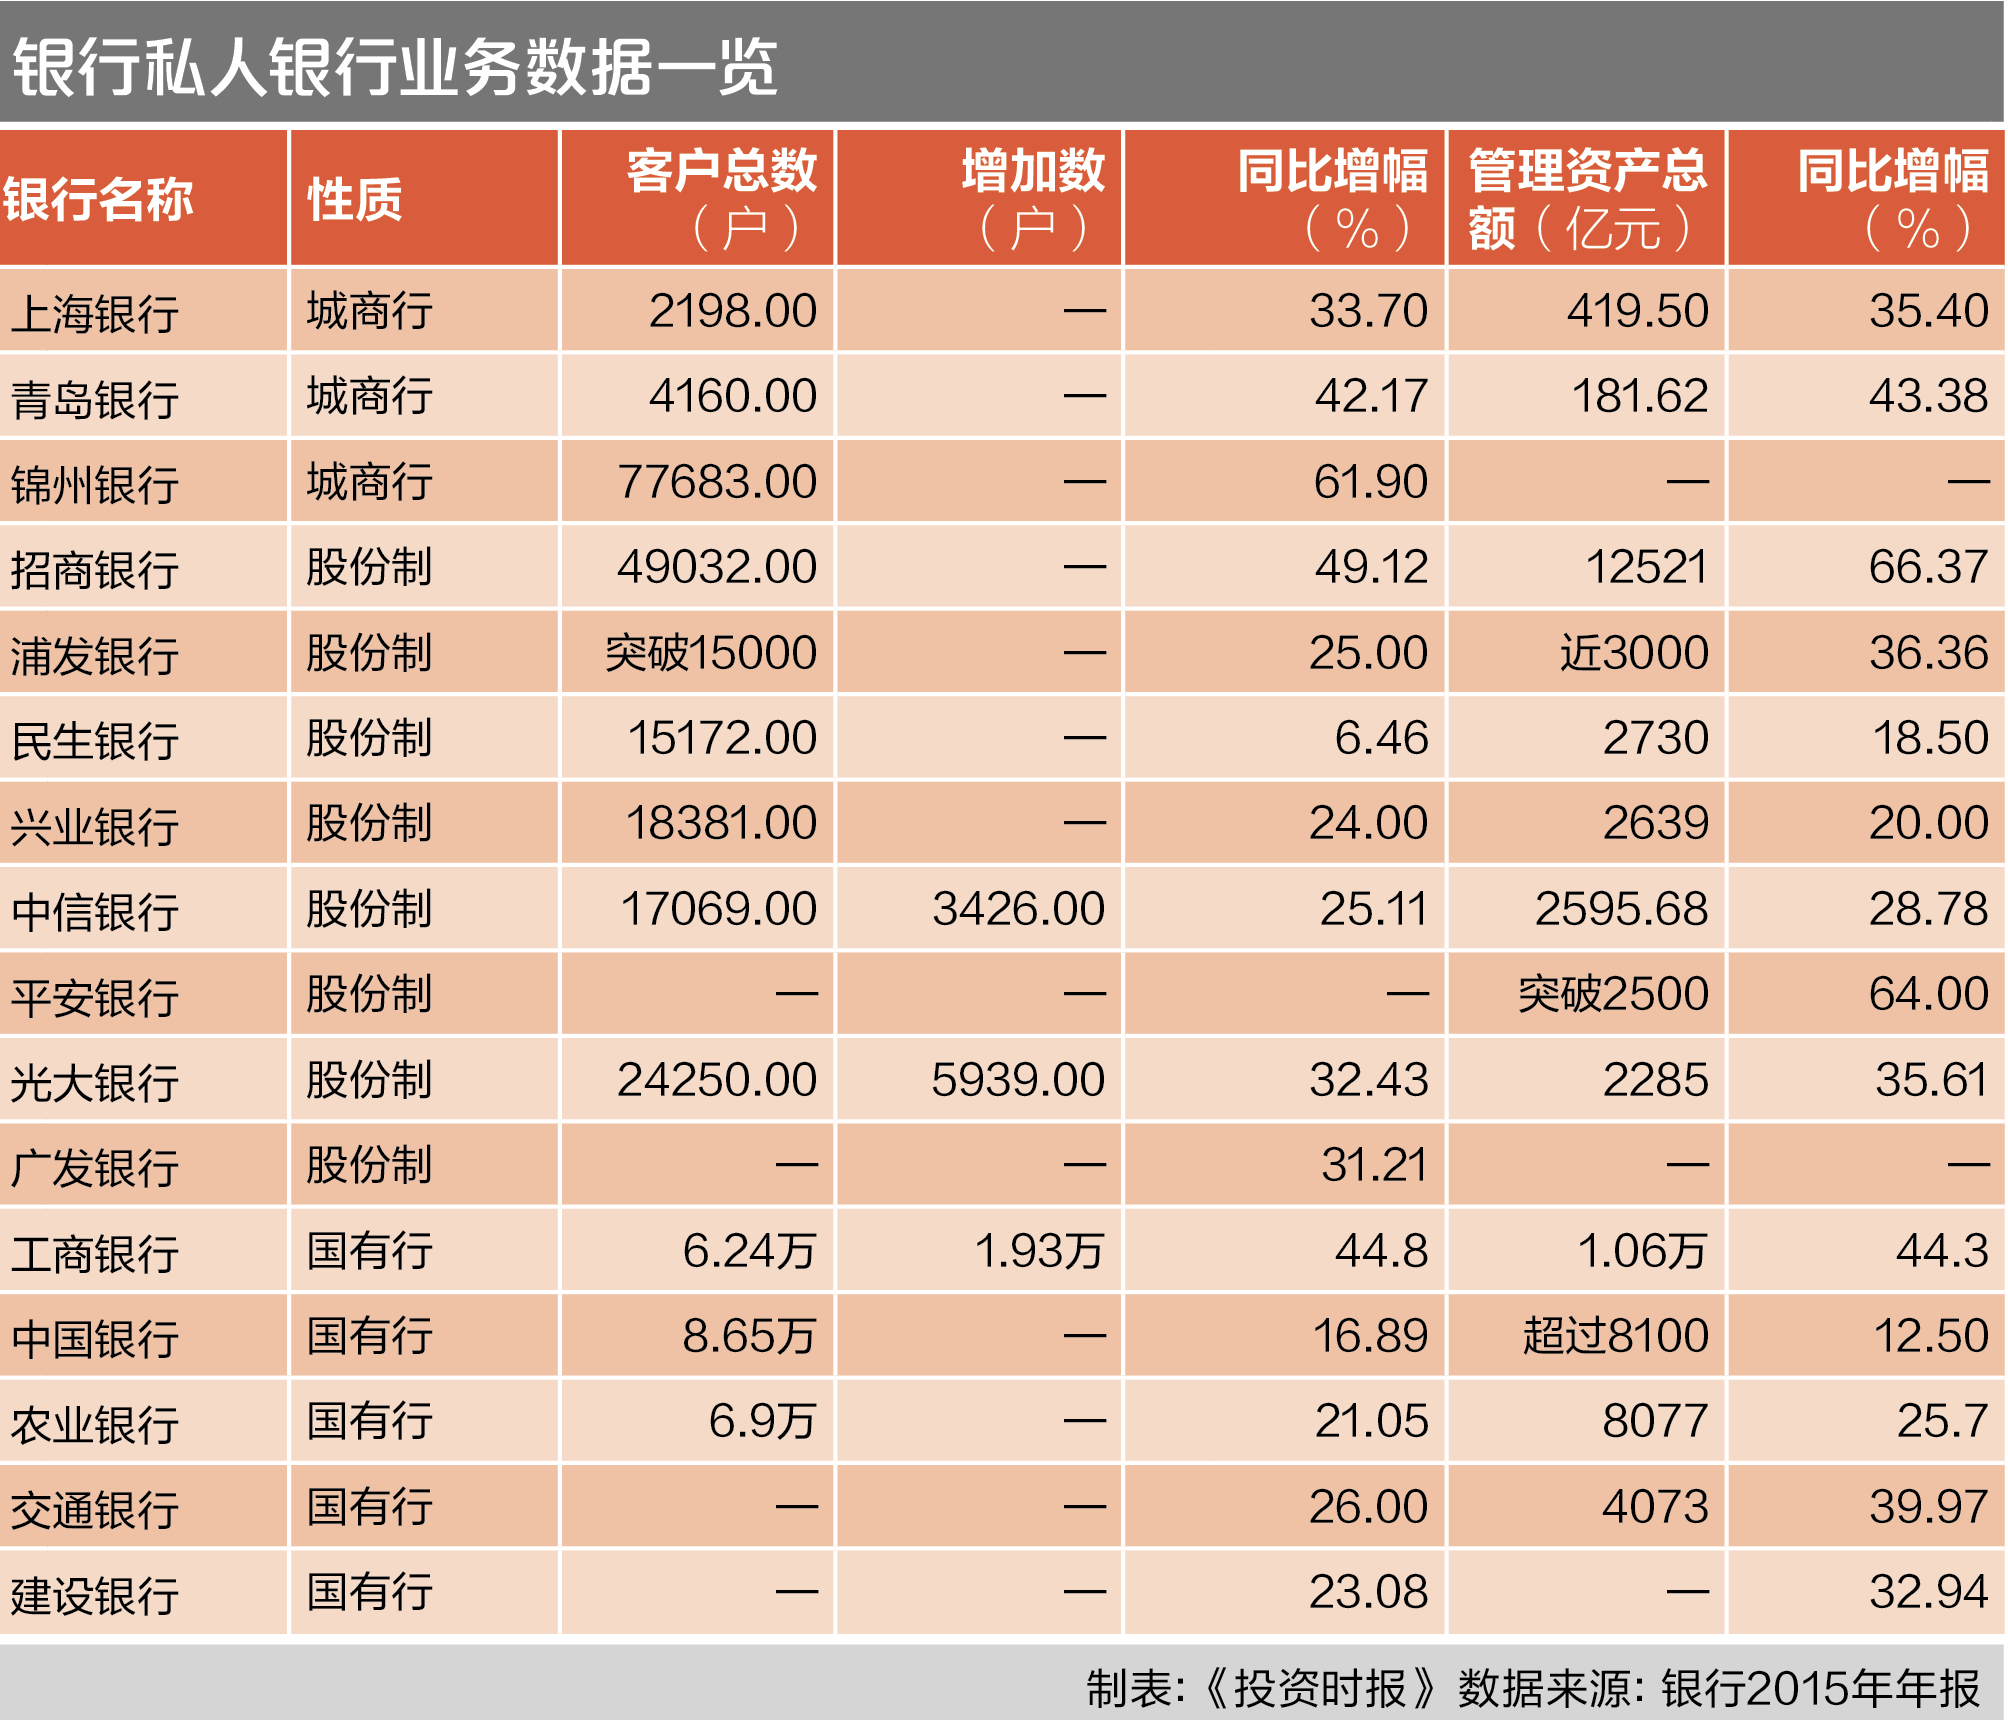 中国银行有钱客户最多 招行1.25万亿管理资产